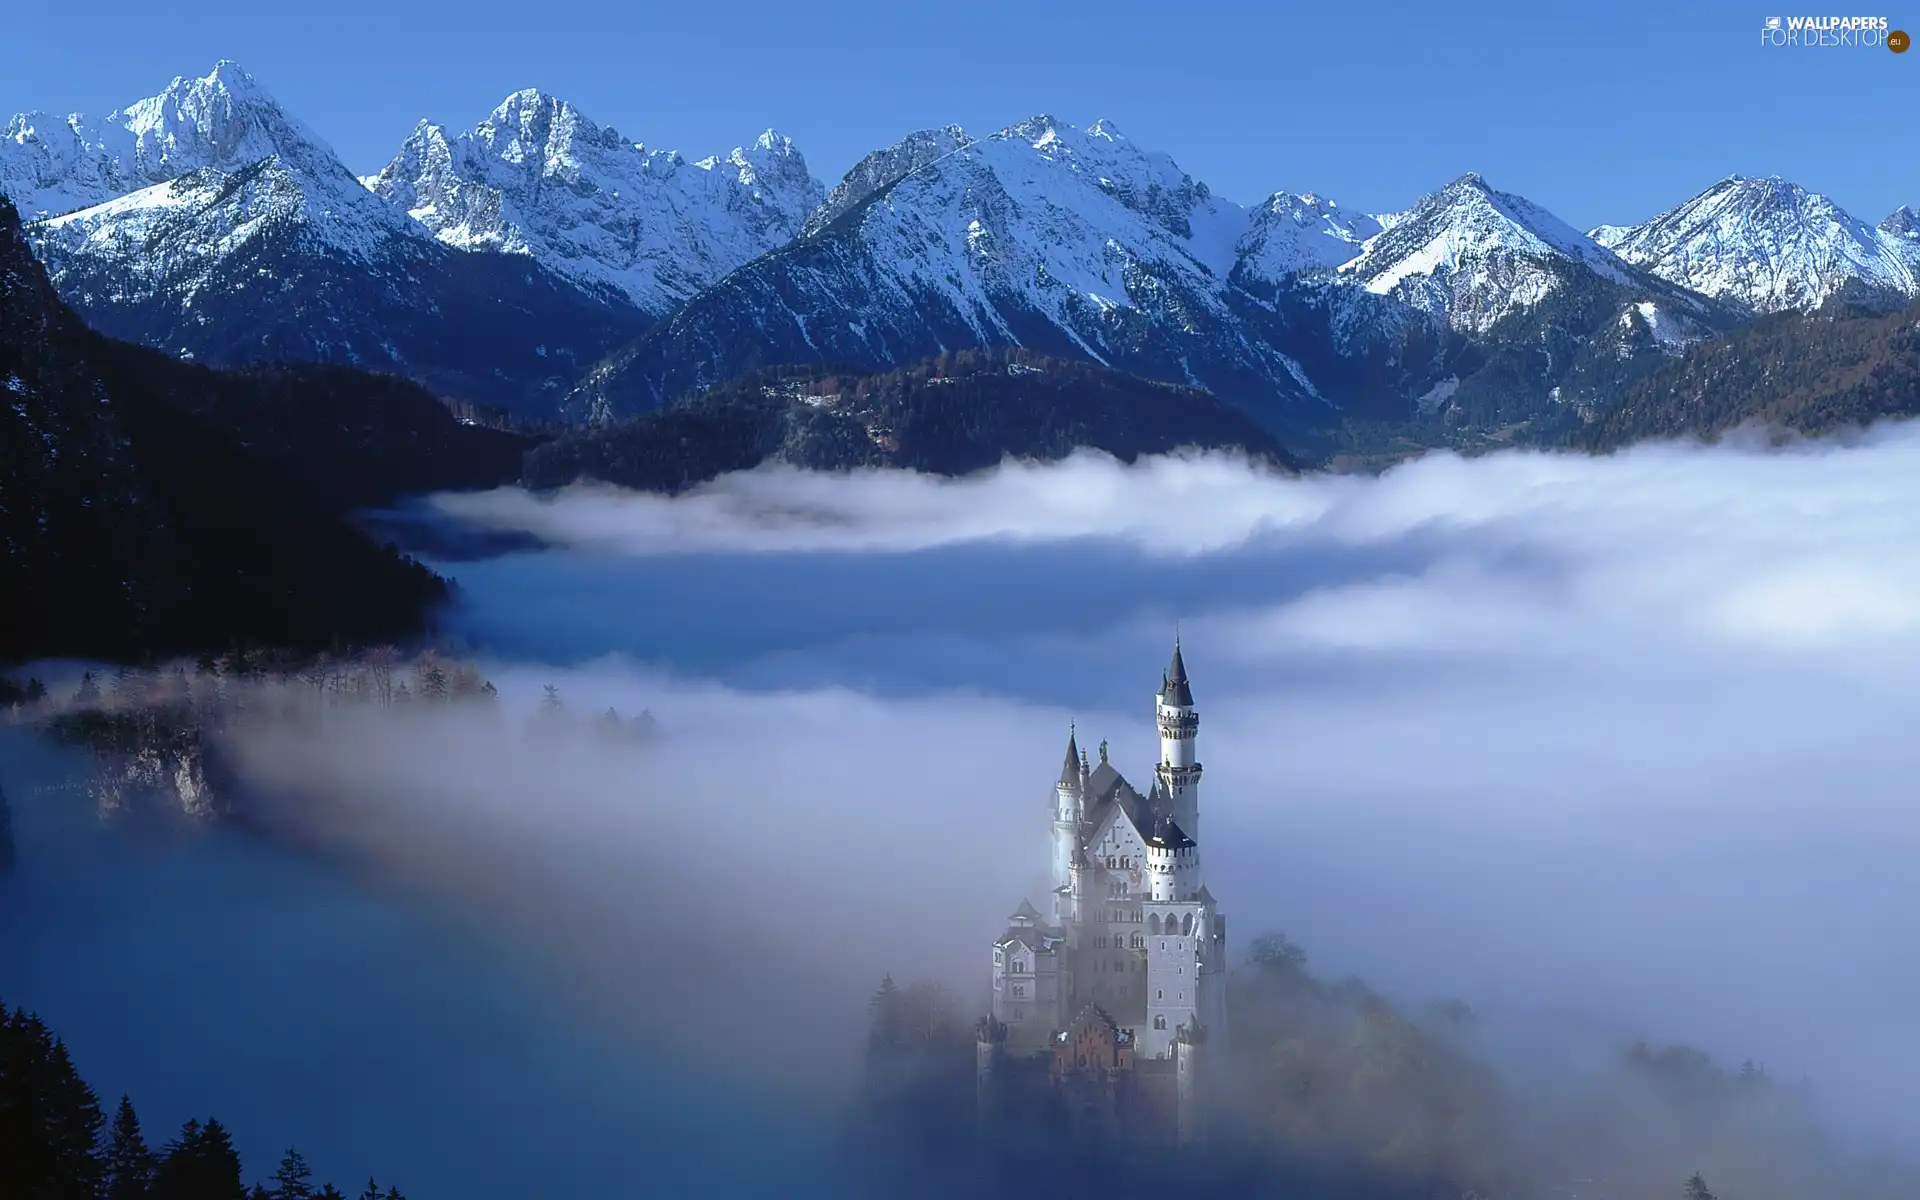 Neuschwanstein, Fog, winter, Castle, Mountains